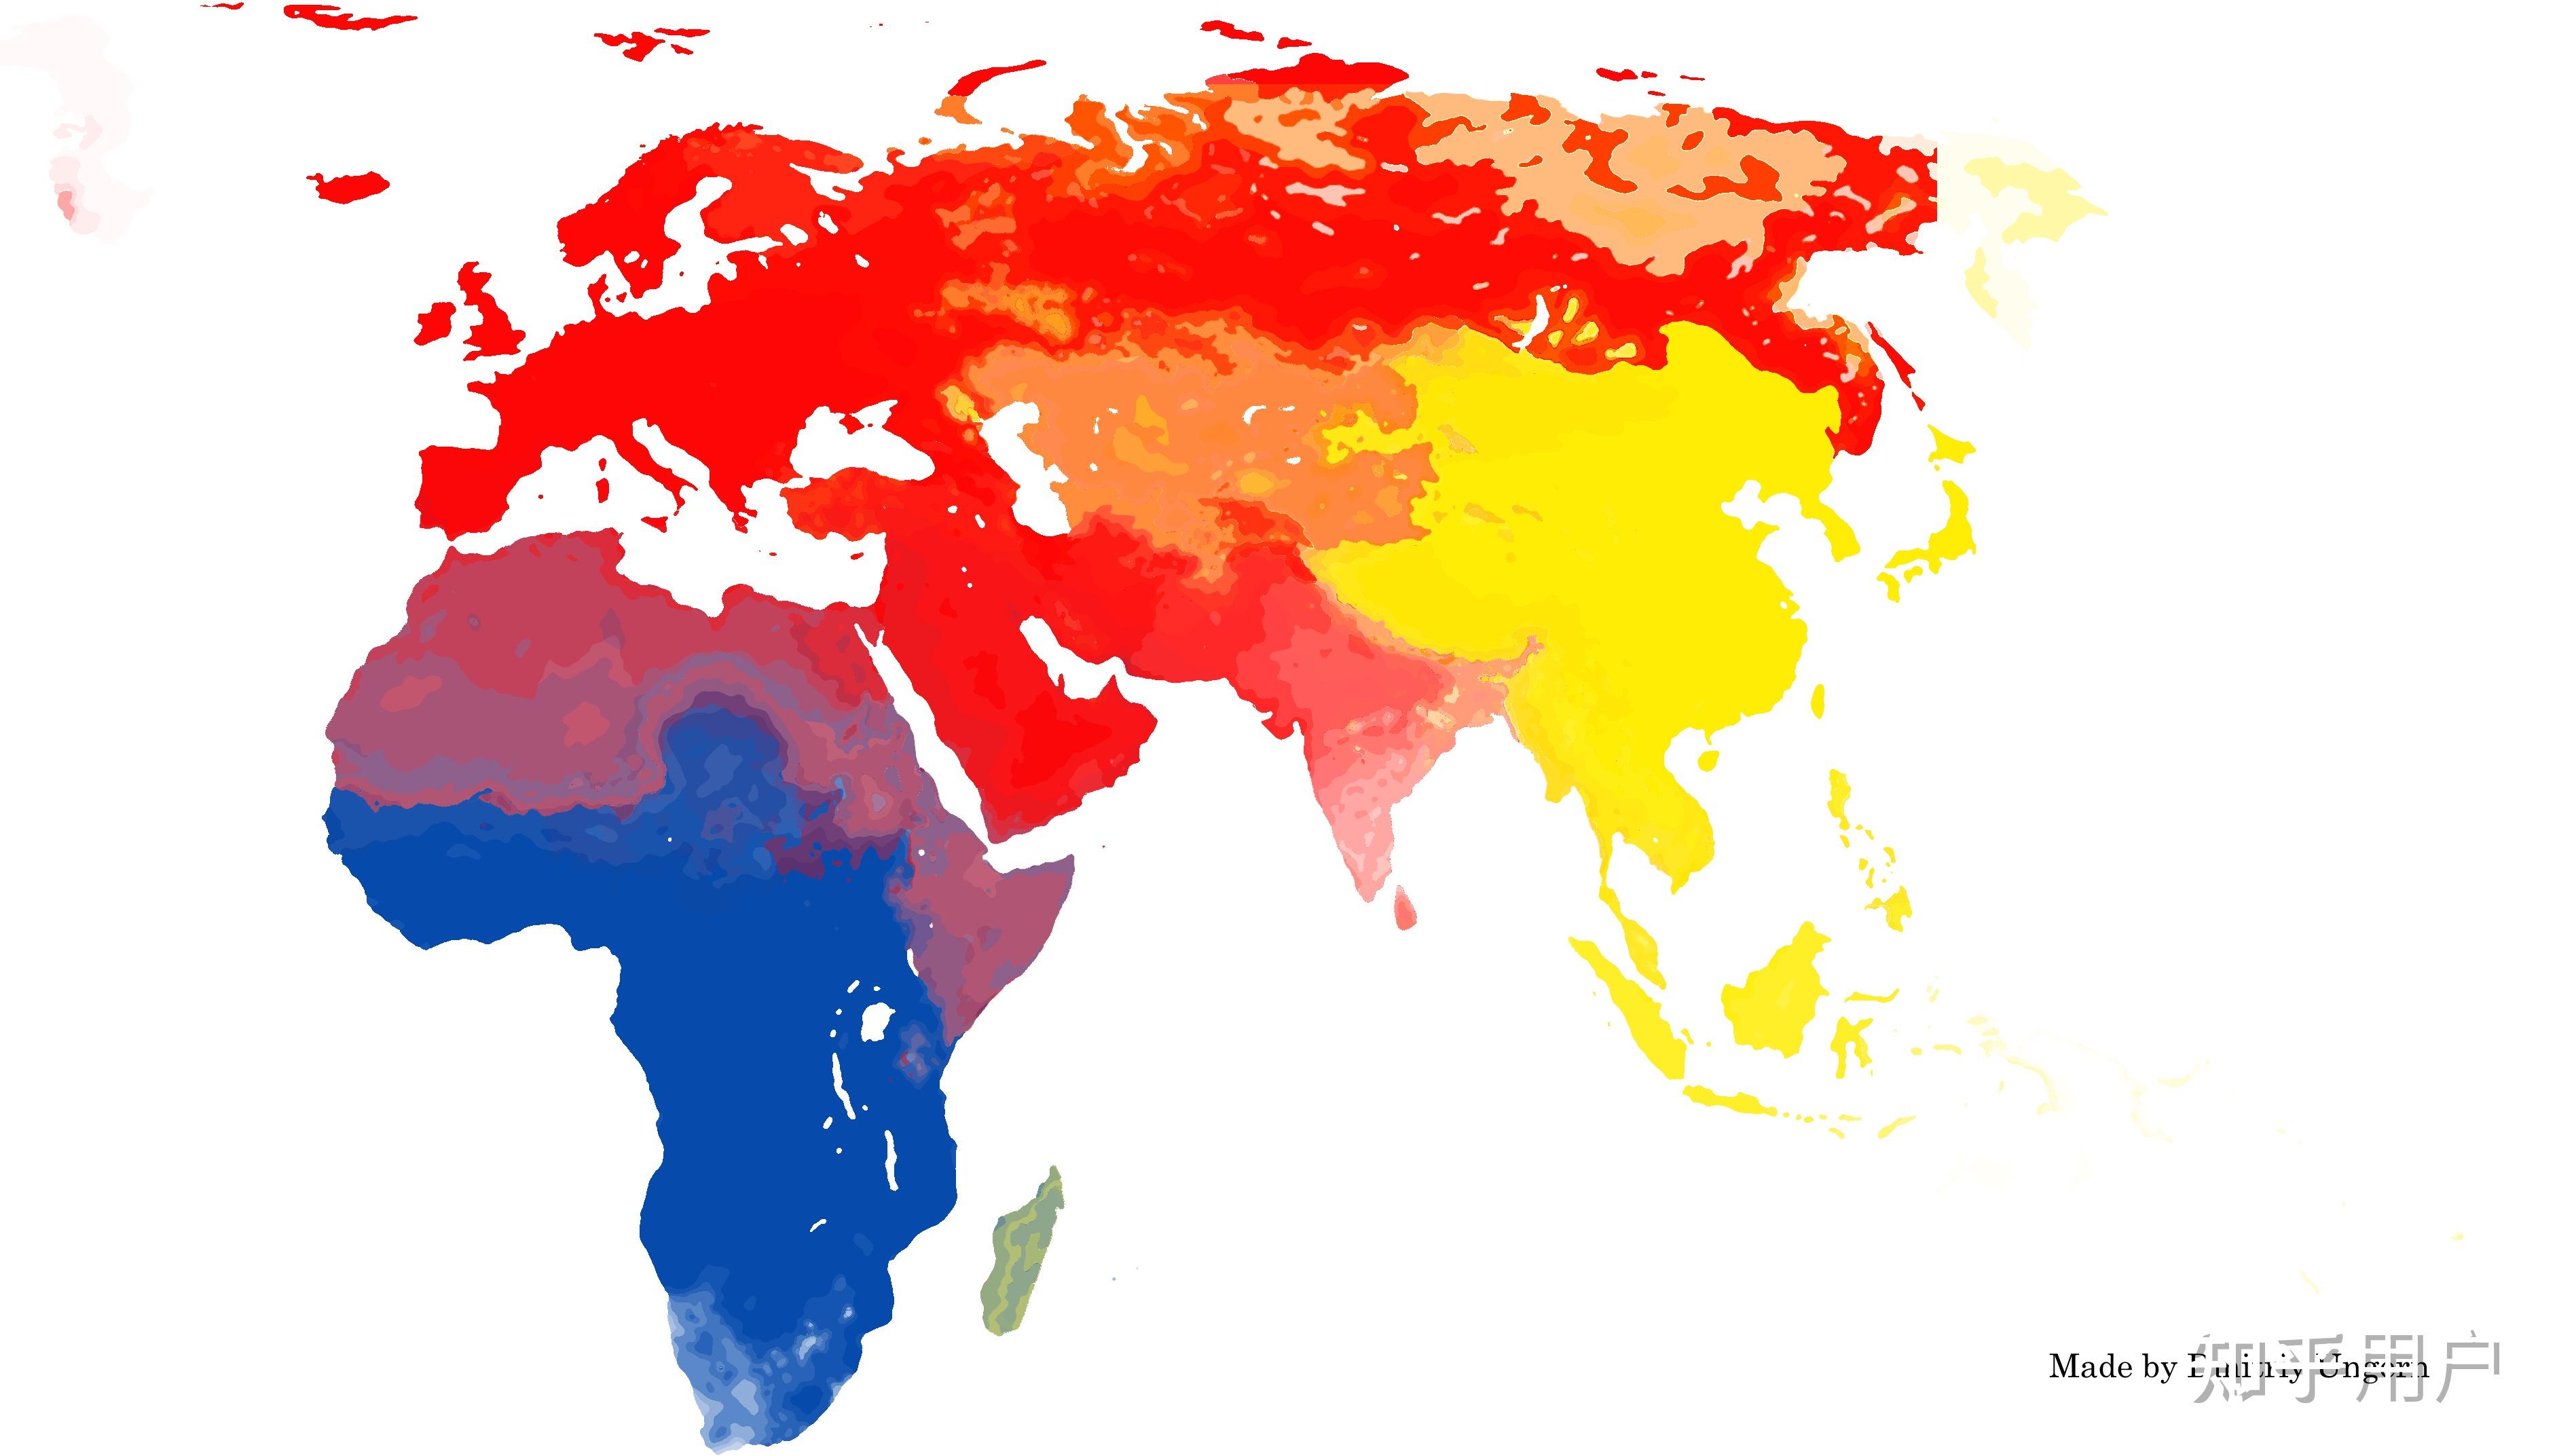 为什么在张世界人种分布图中,亚欧大陆中部的黄种人与白种人分布看